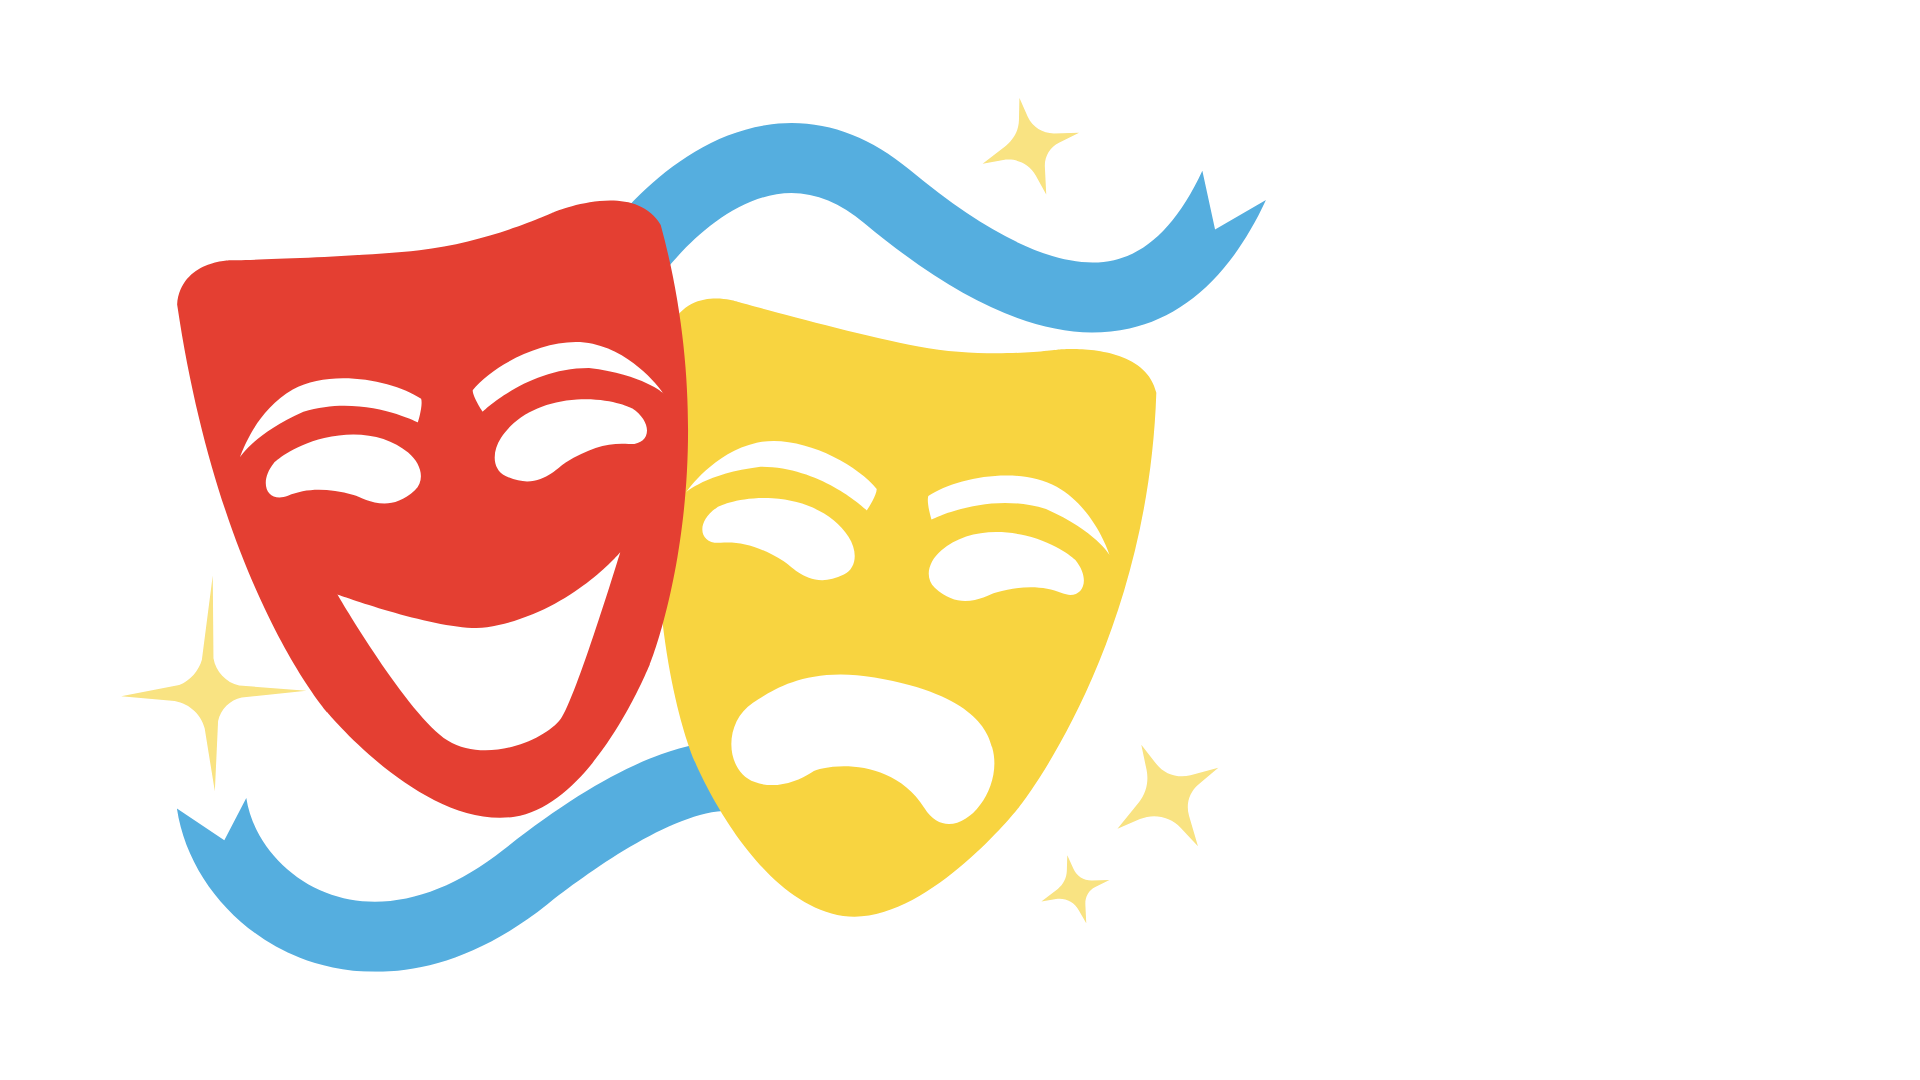 Театральные маски. Театральная эмблема. Театр логотип маски. Маски символ театра